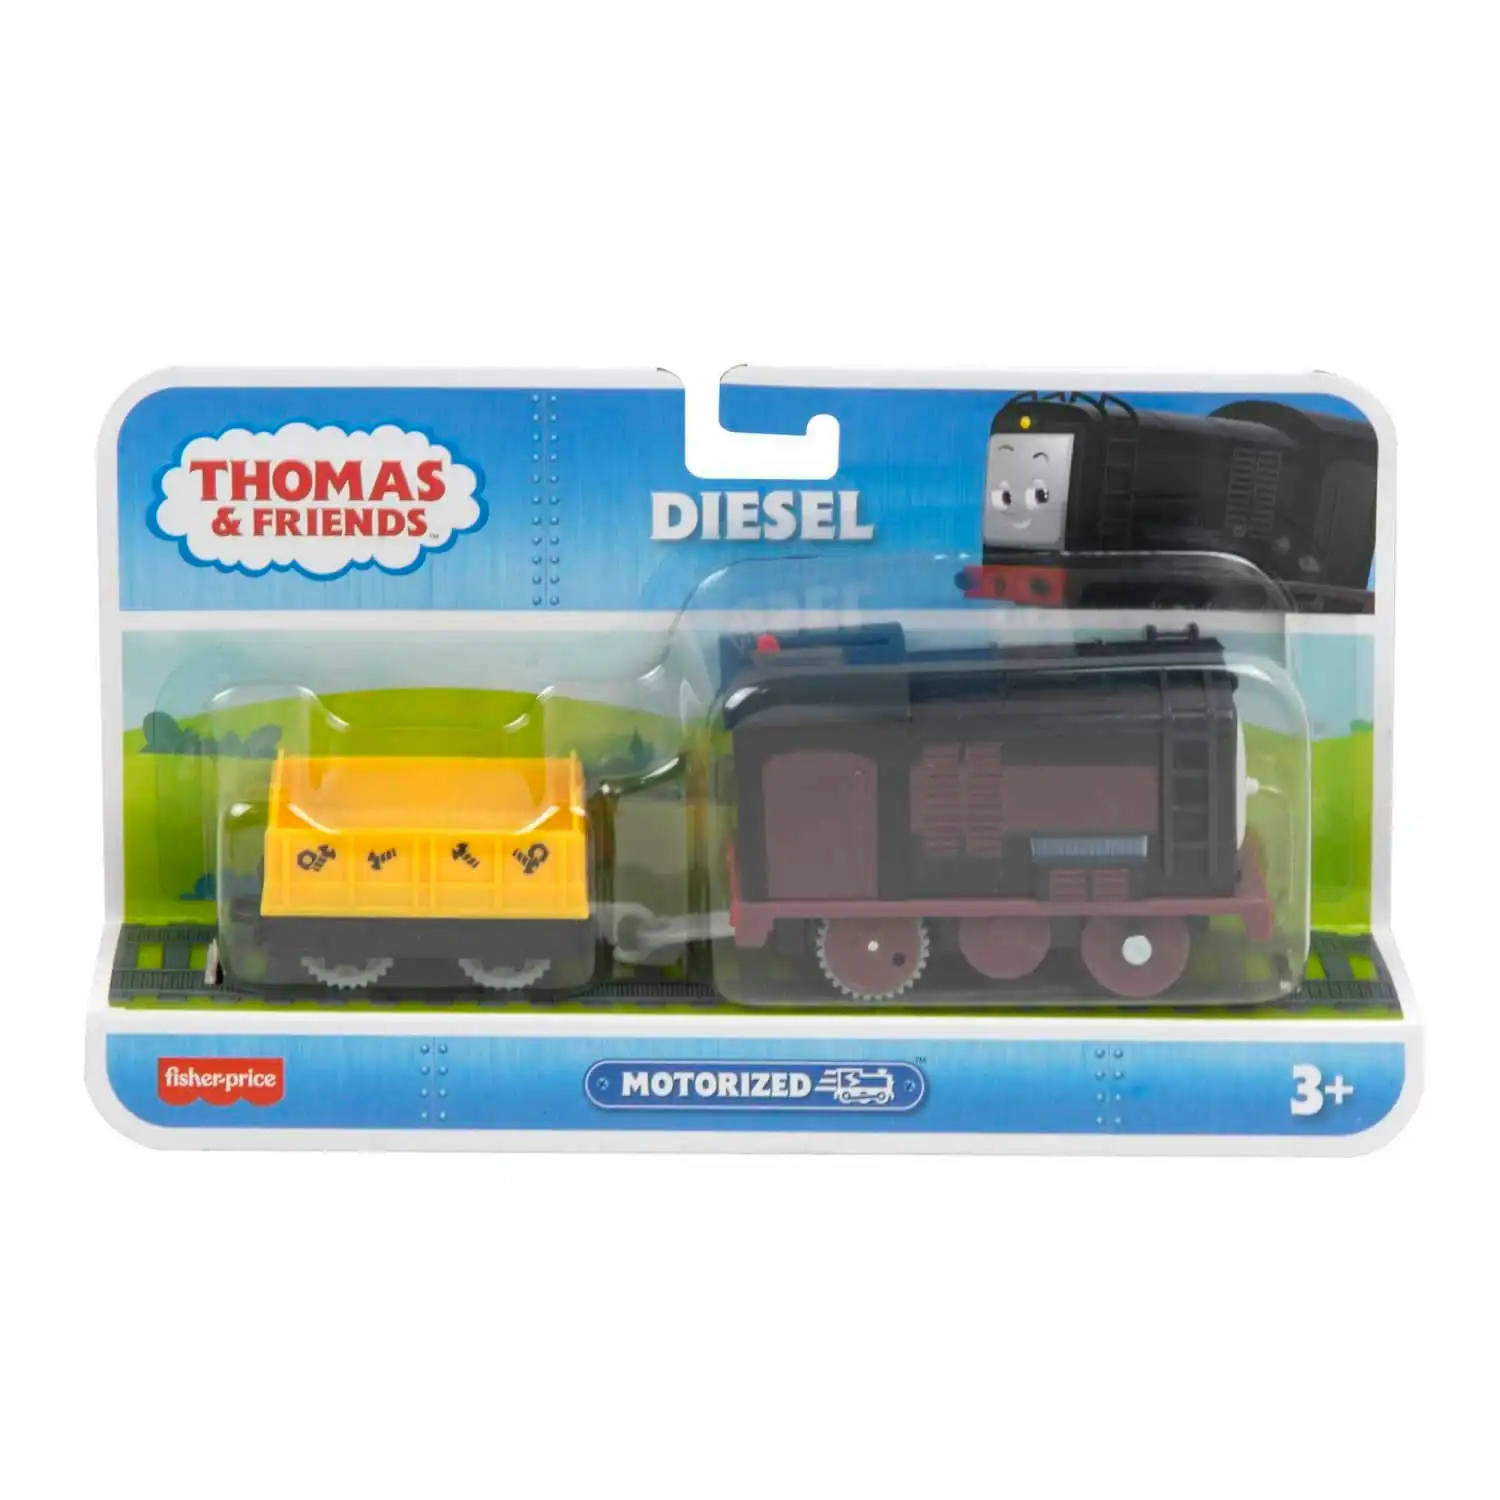 Thomas & Friends Diesel Motorized Toy Train Preschool Toys